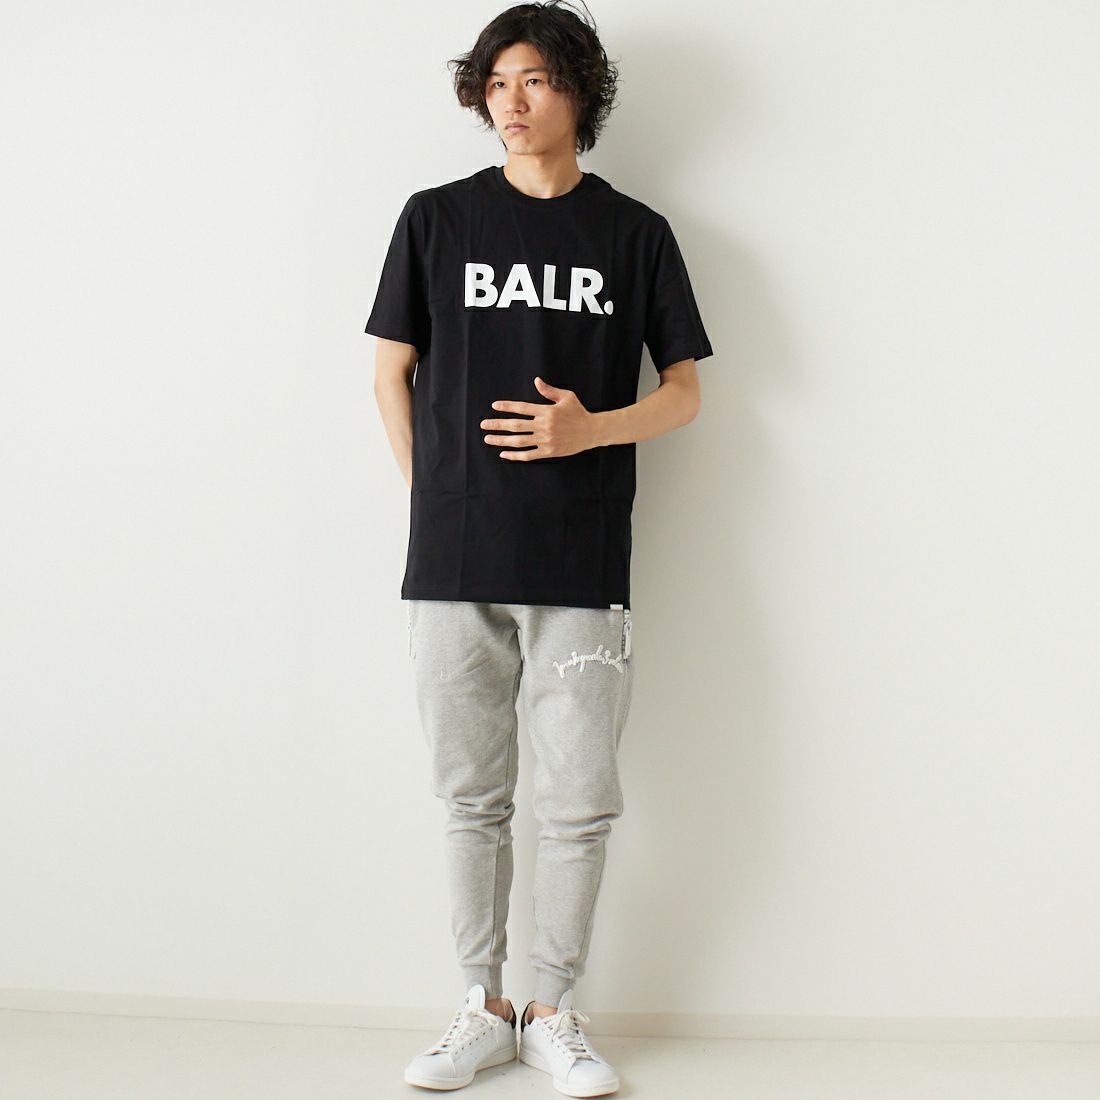 BALR.ボーラー Tシャツ BRAND SHIRT B10001 サイズ:M 色:ブラック(0001) 即納特典付き - トップス